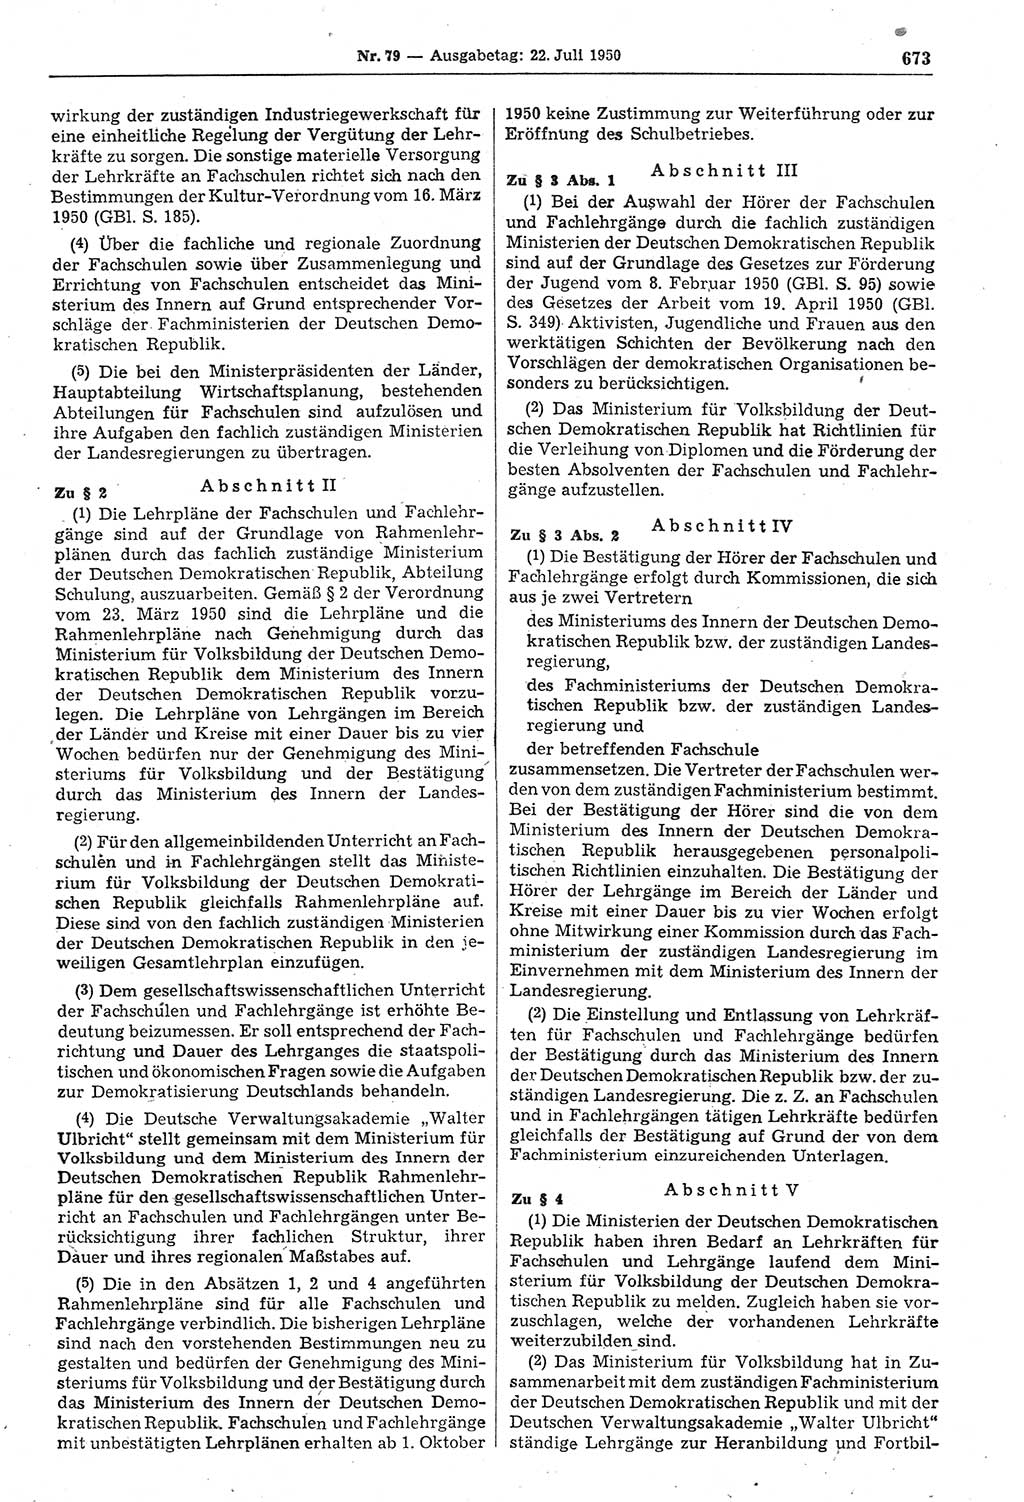 Gesetzblatt (GBl.) der Deutschen Demokratischen Republik (DDR) 1950, Seite 673 (GBl. DDR 1950, S. 673)